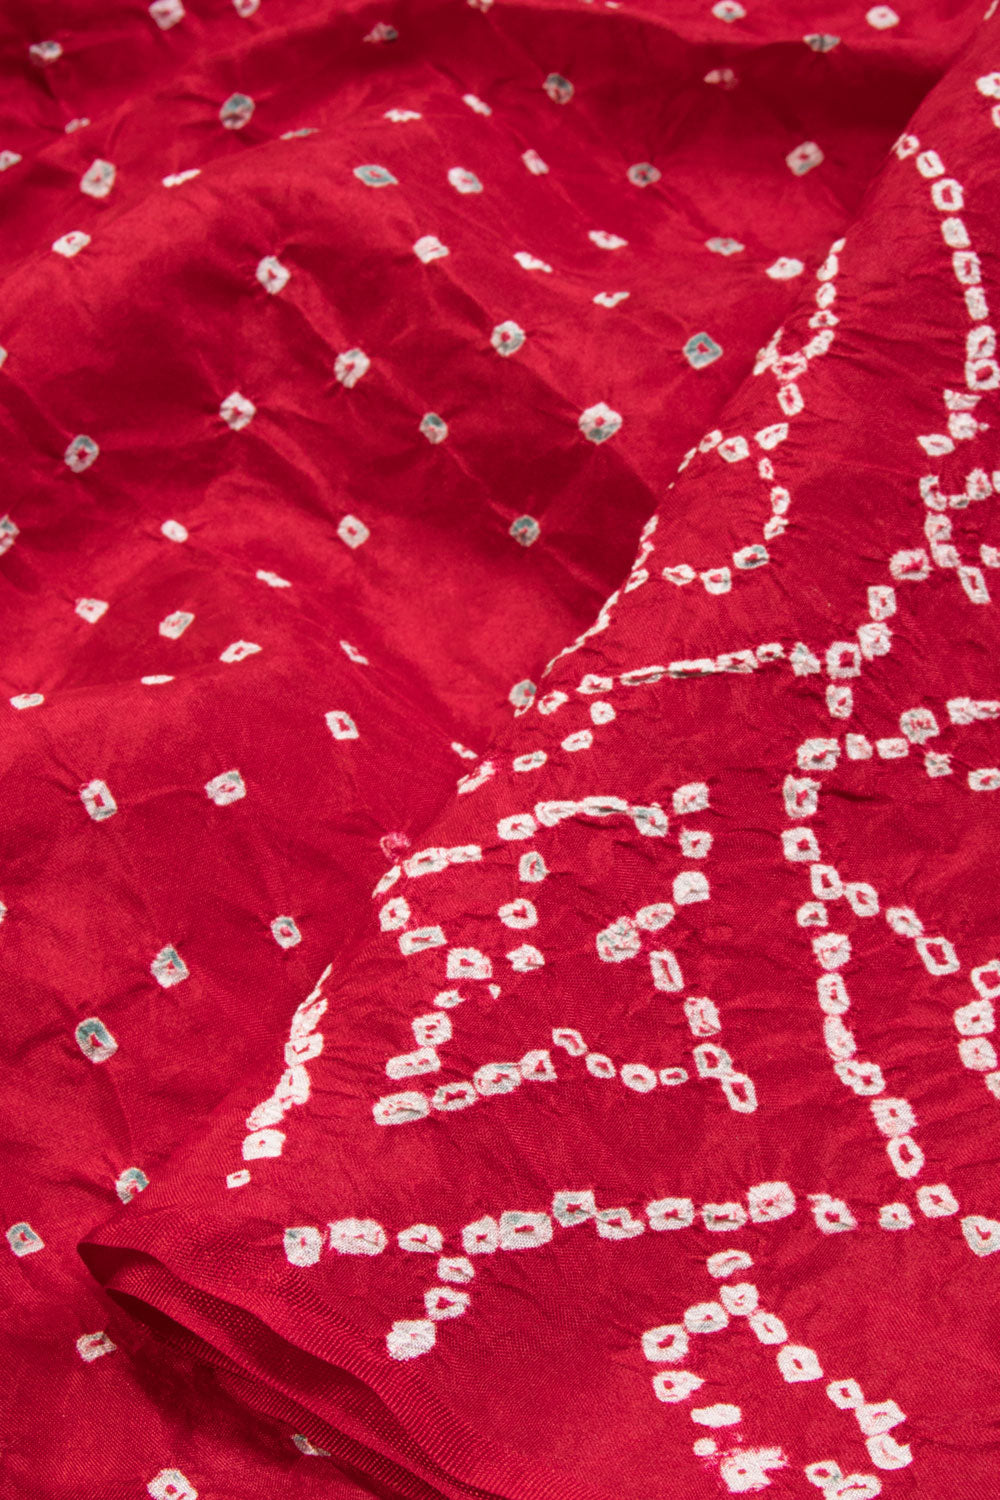 Red Bandhani Mulberry Silk Saree - Avishya